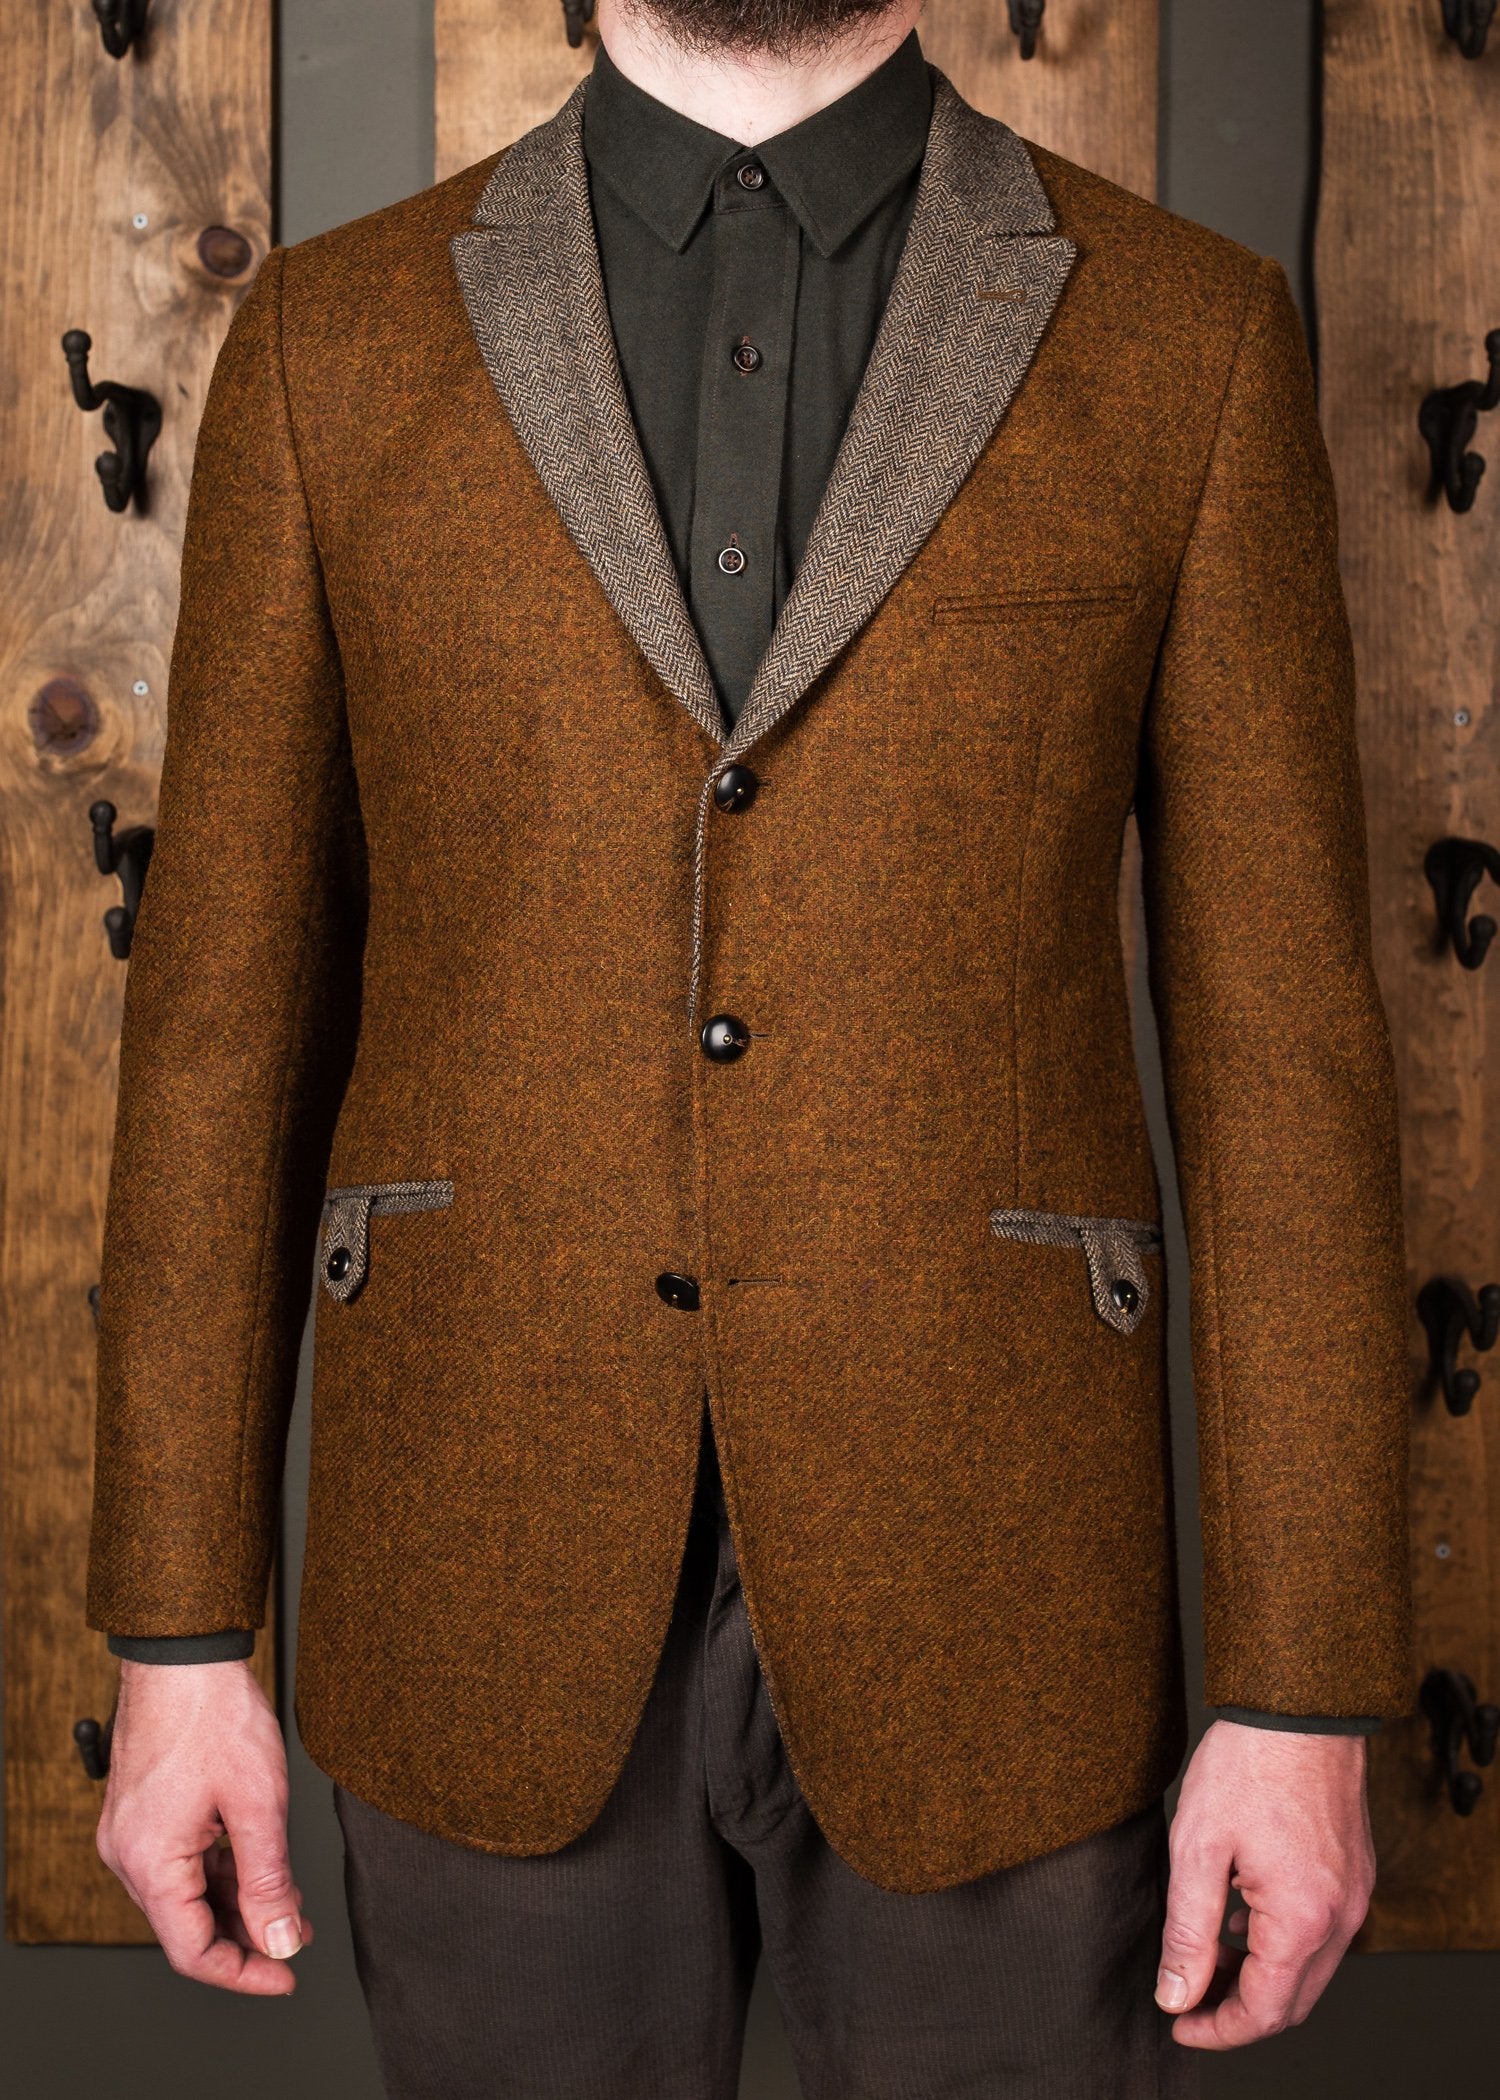 Contrast Jacket - Rust